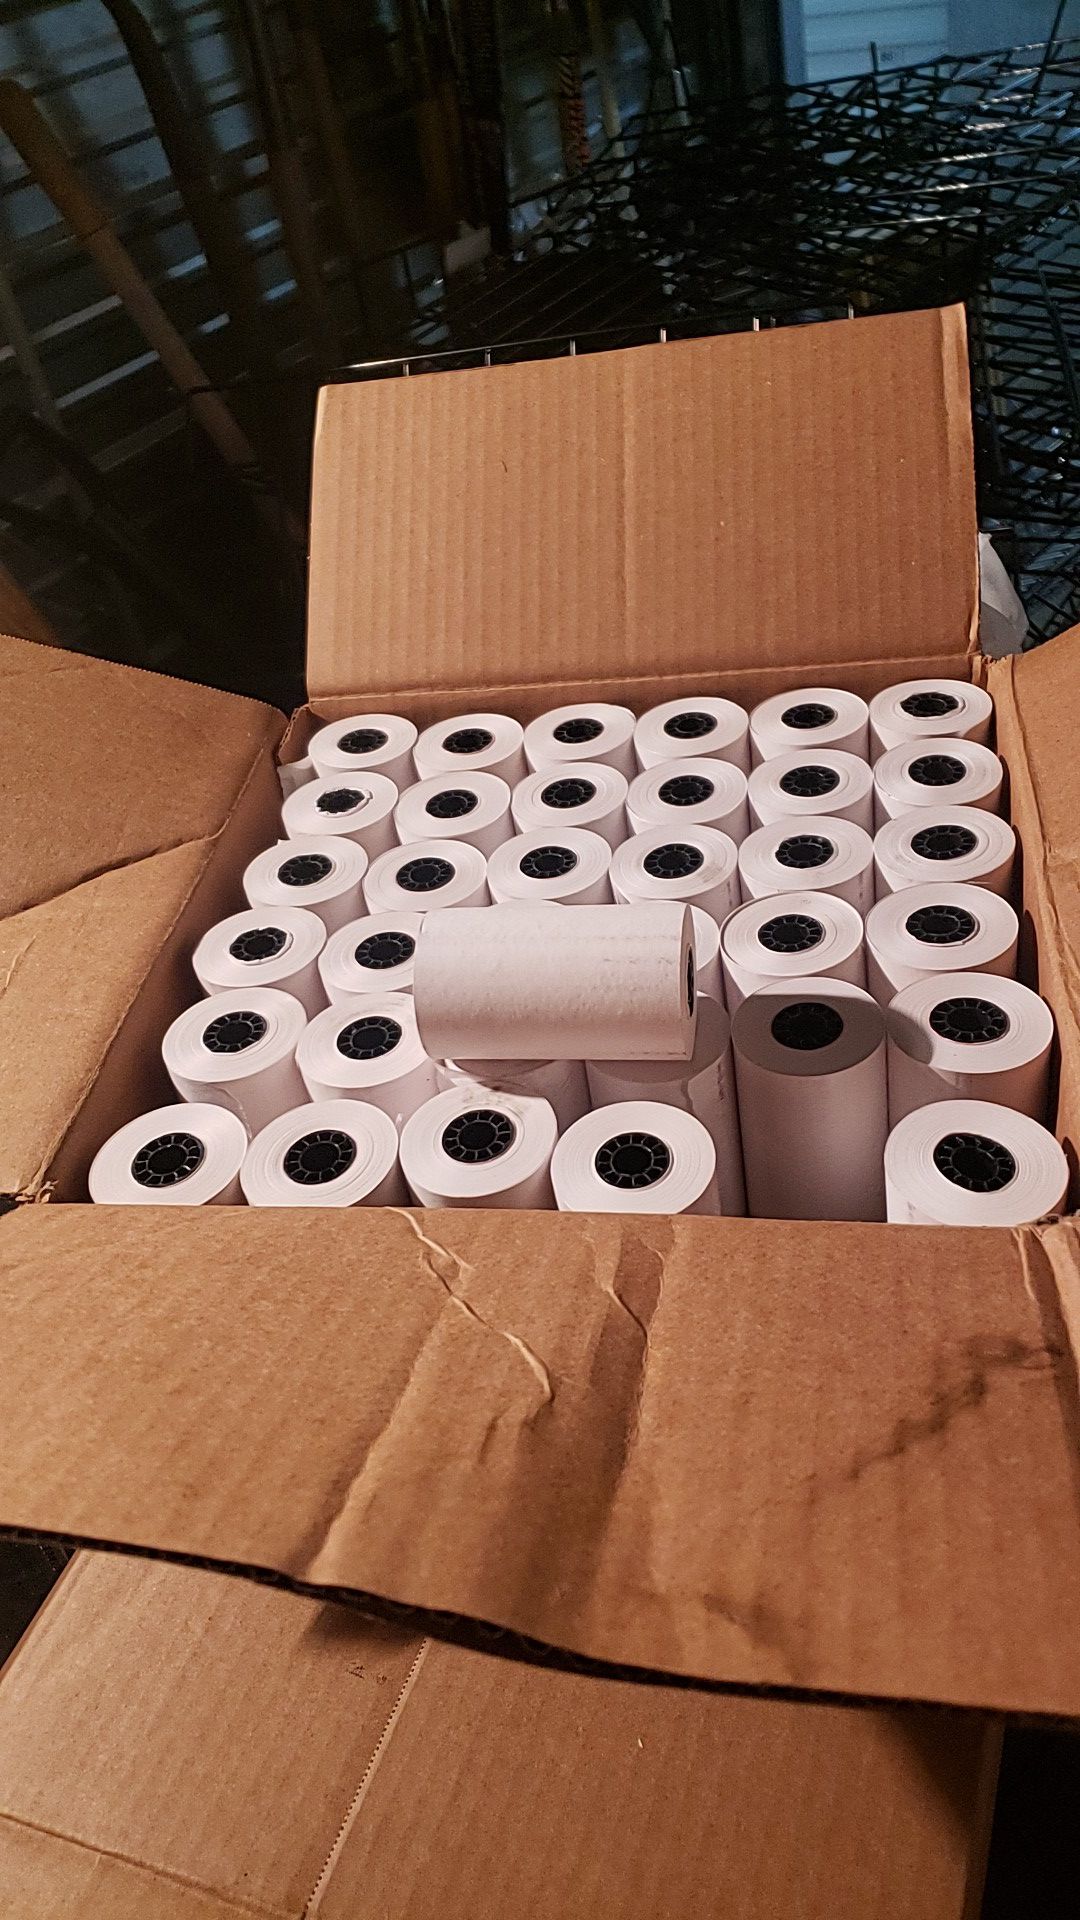 72 rolls of register tape